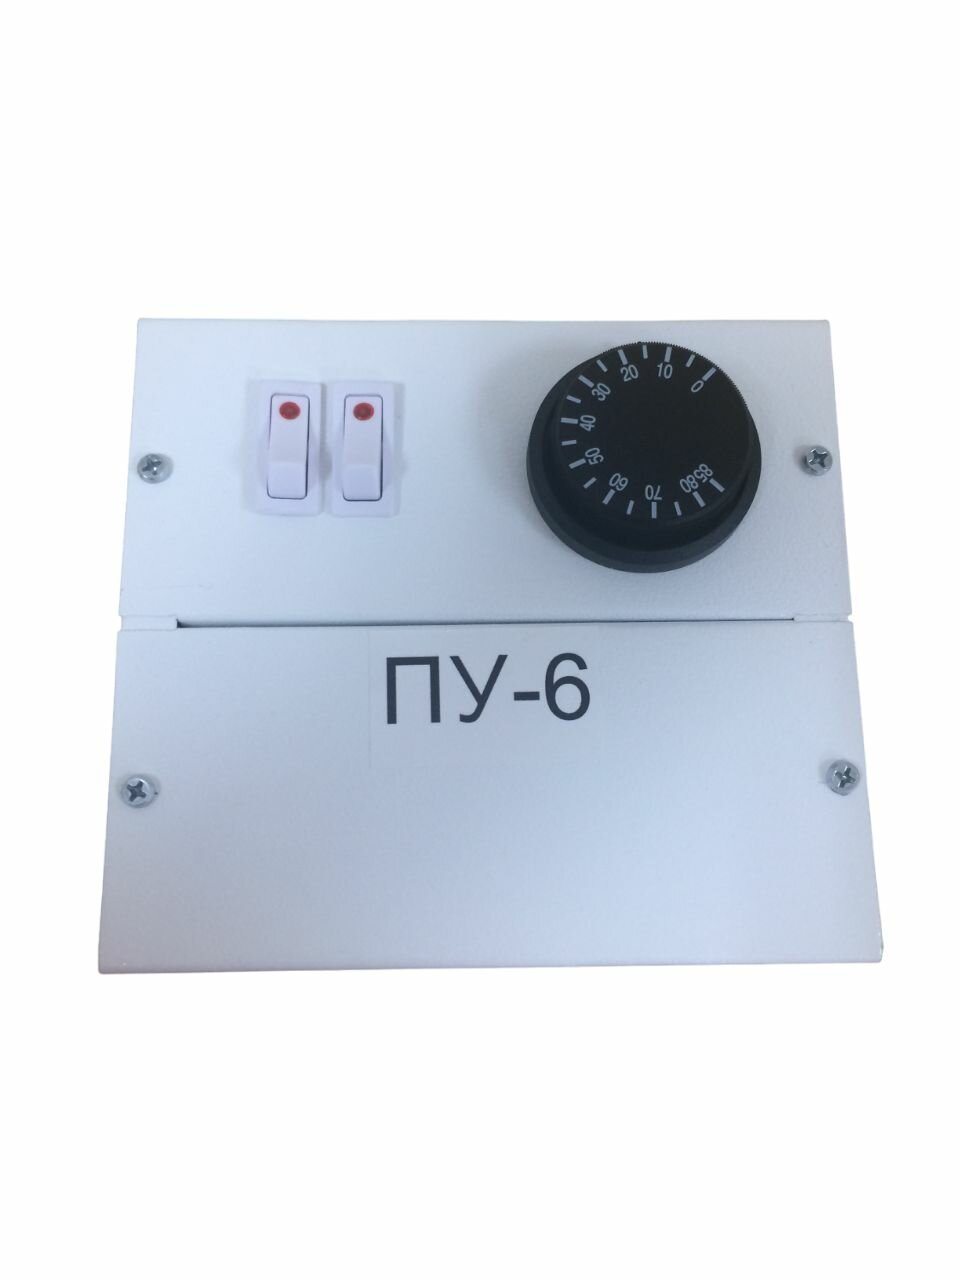 Пульт управления электронагревателями блок для электрокотлов ПУ-6 220